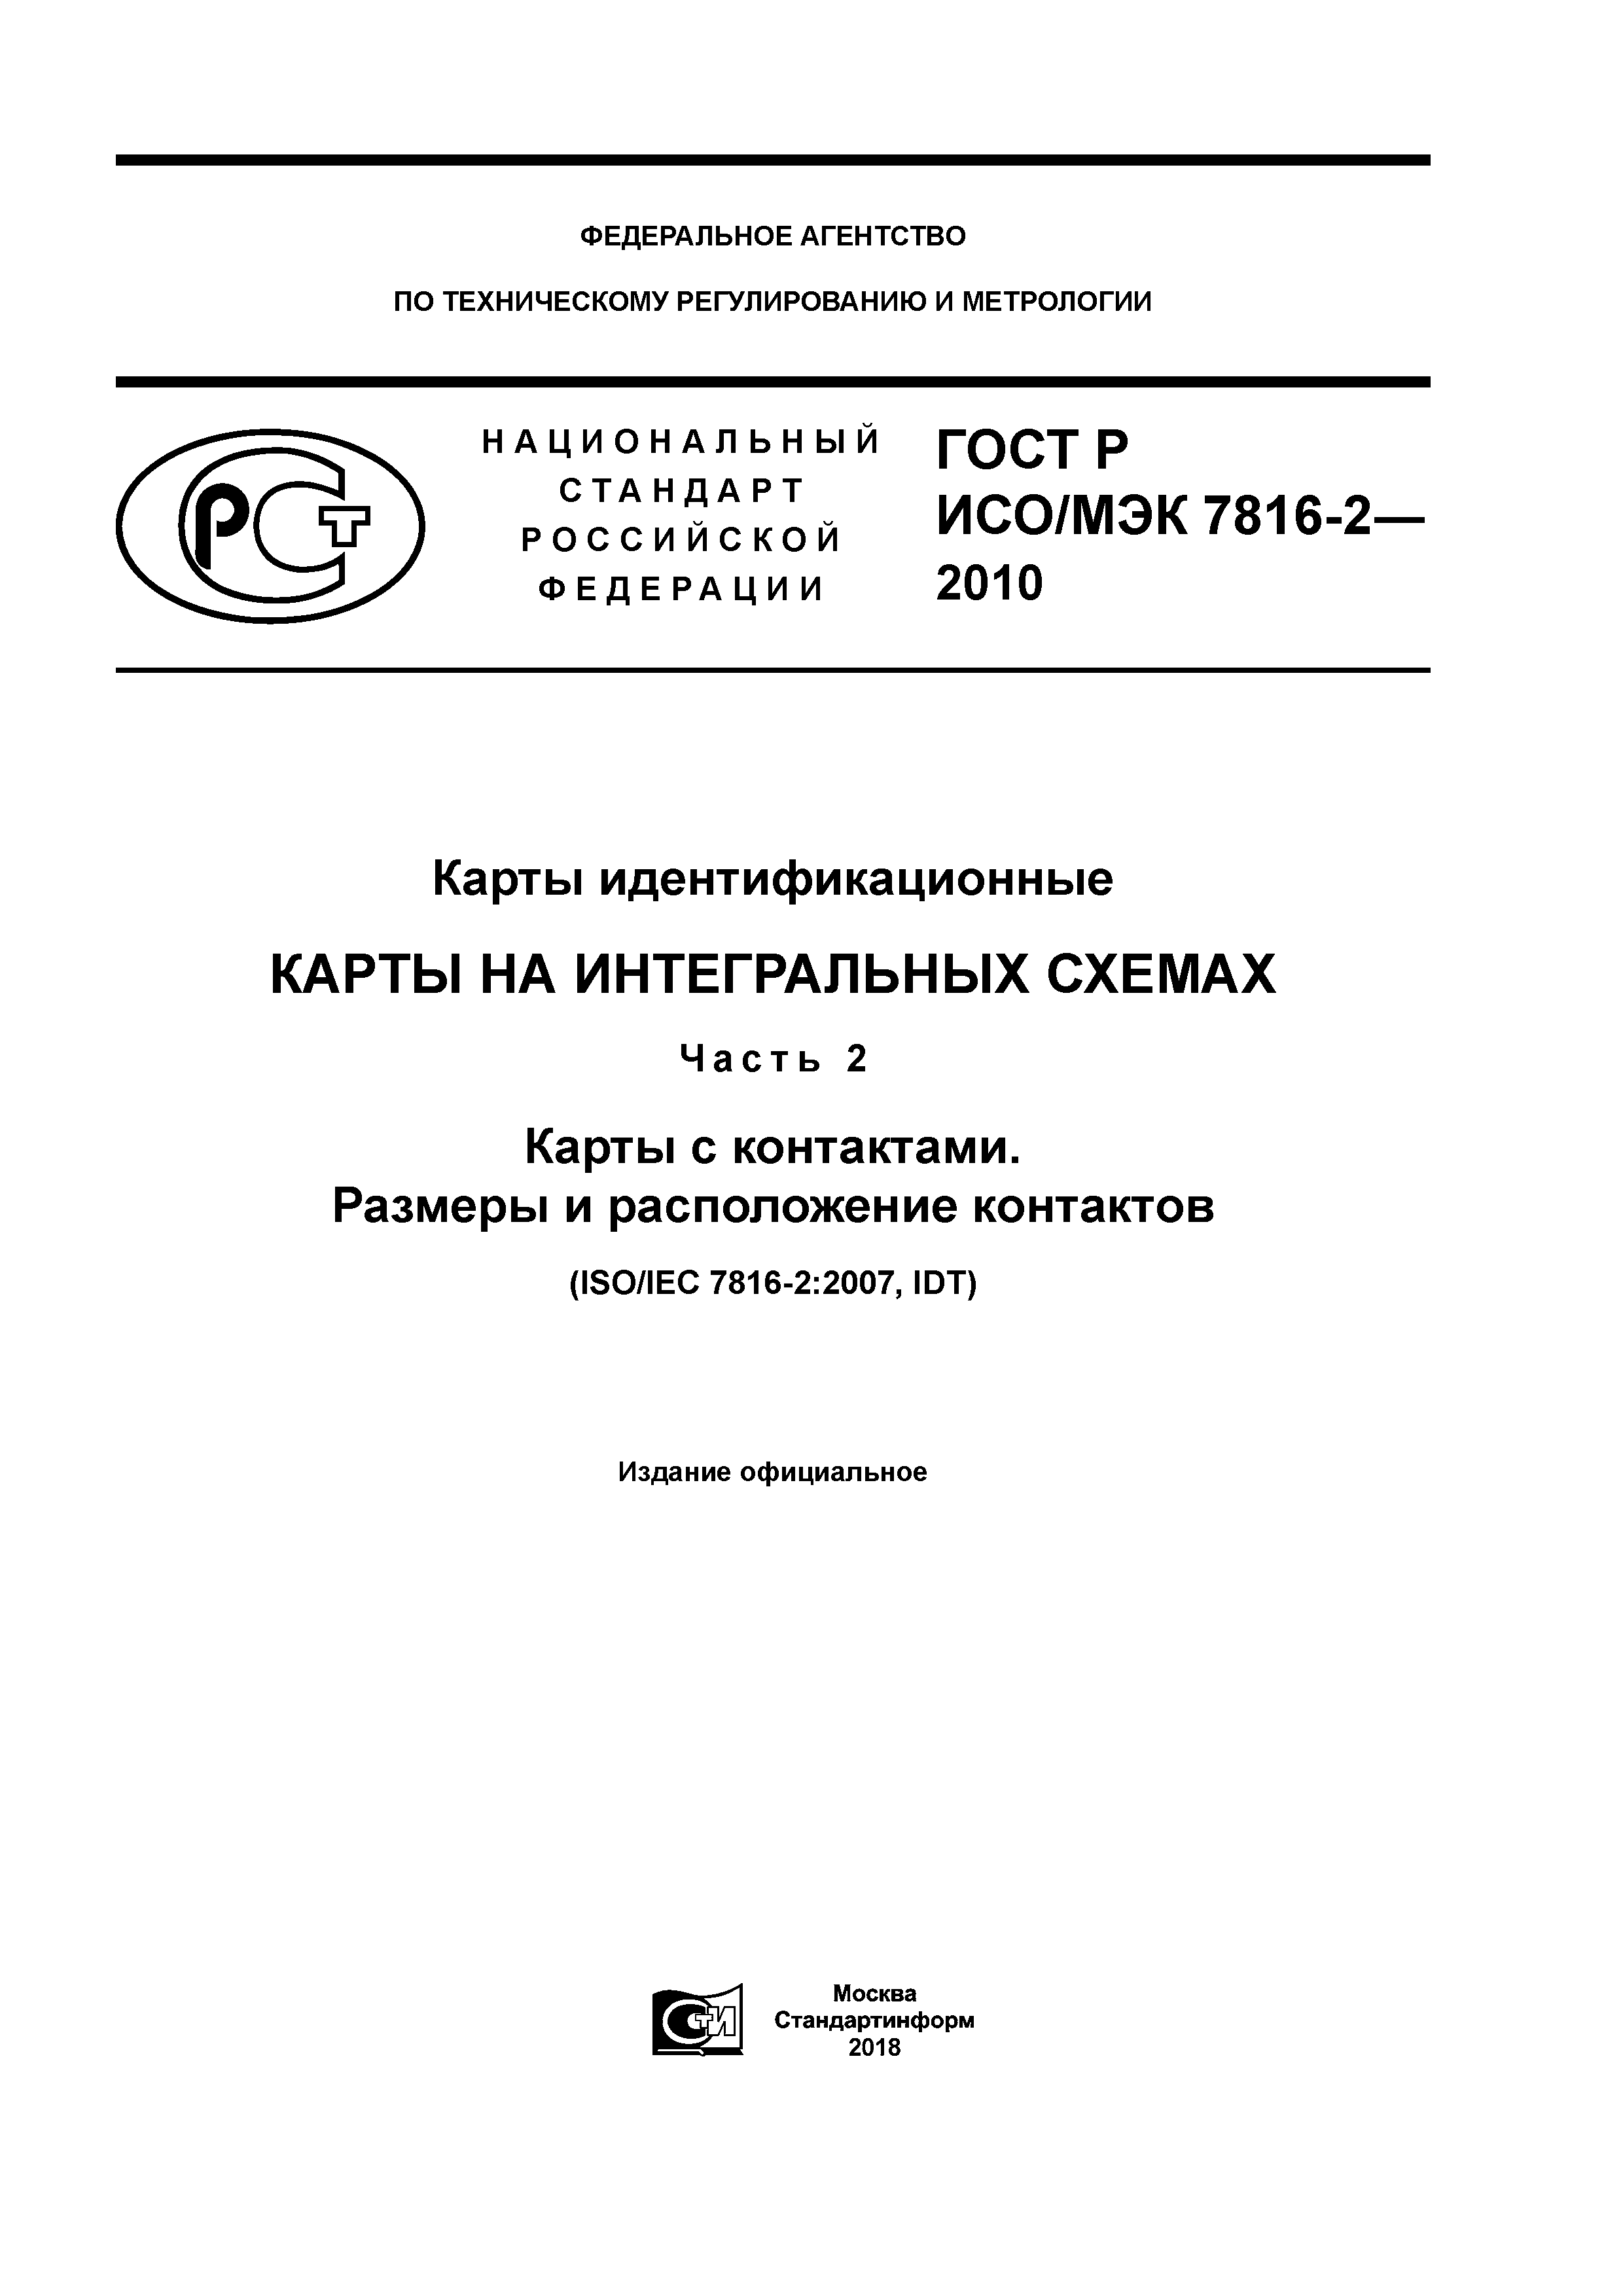 ГОСТ Р ИСО/МЭК 7816-2-2010